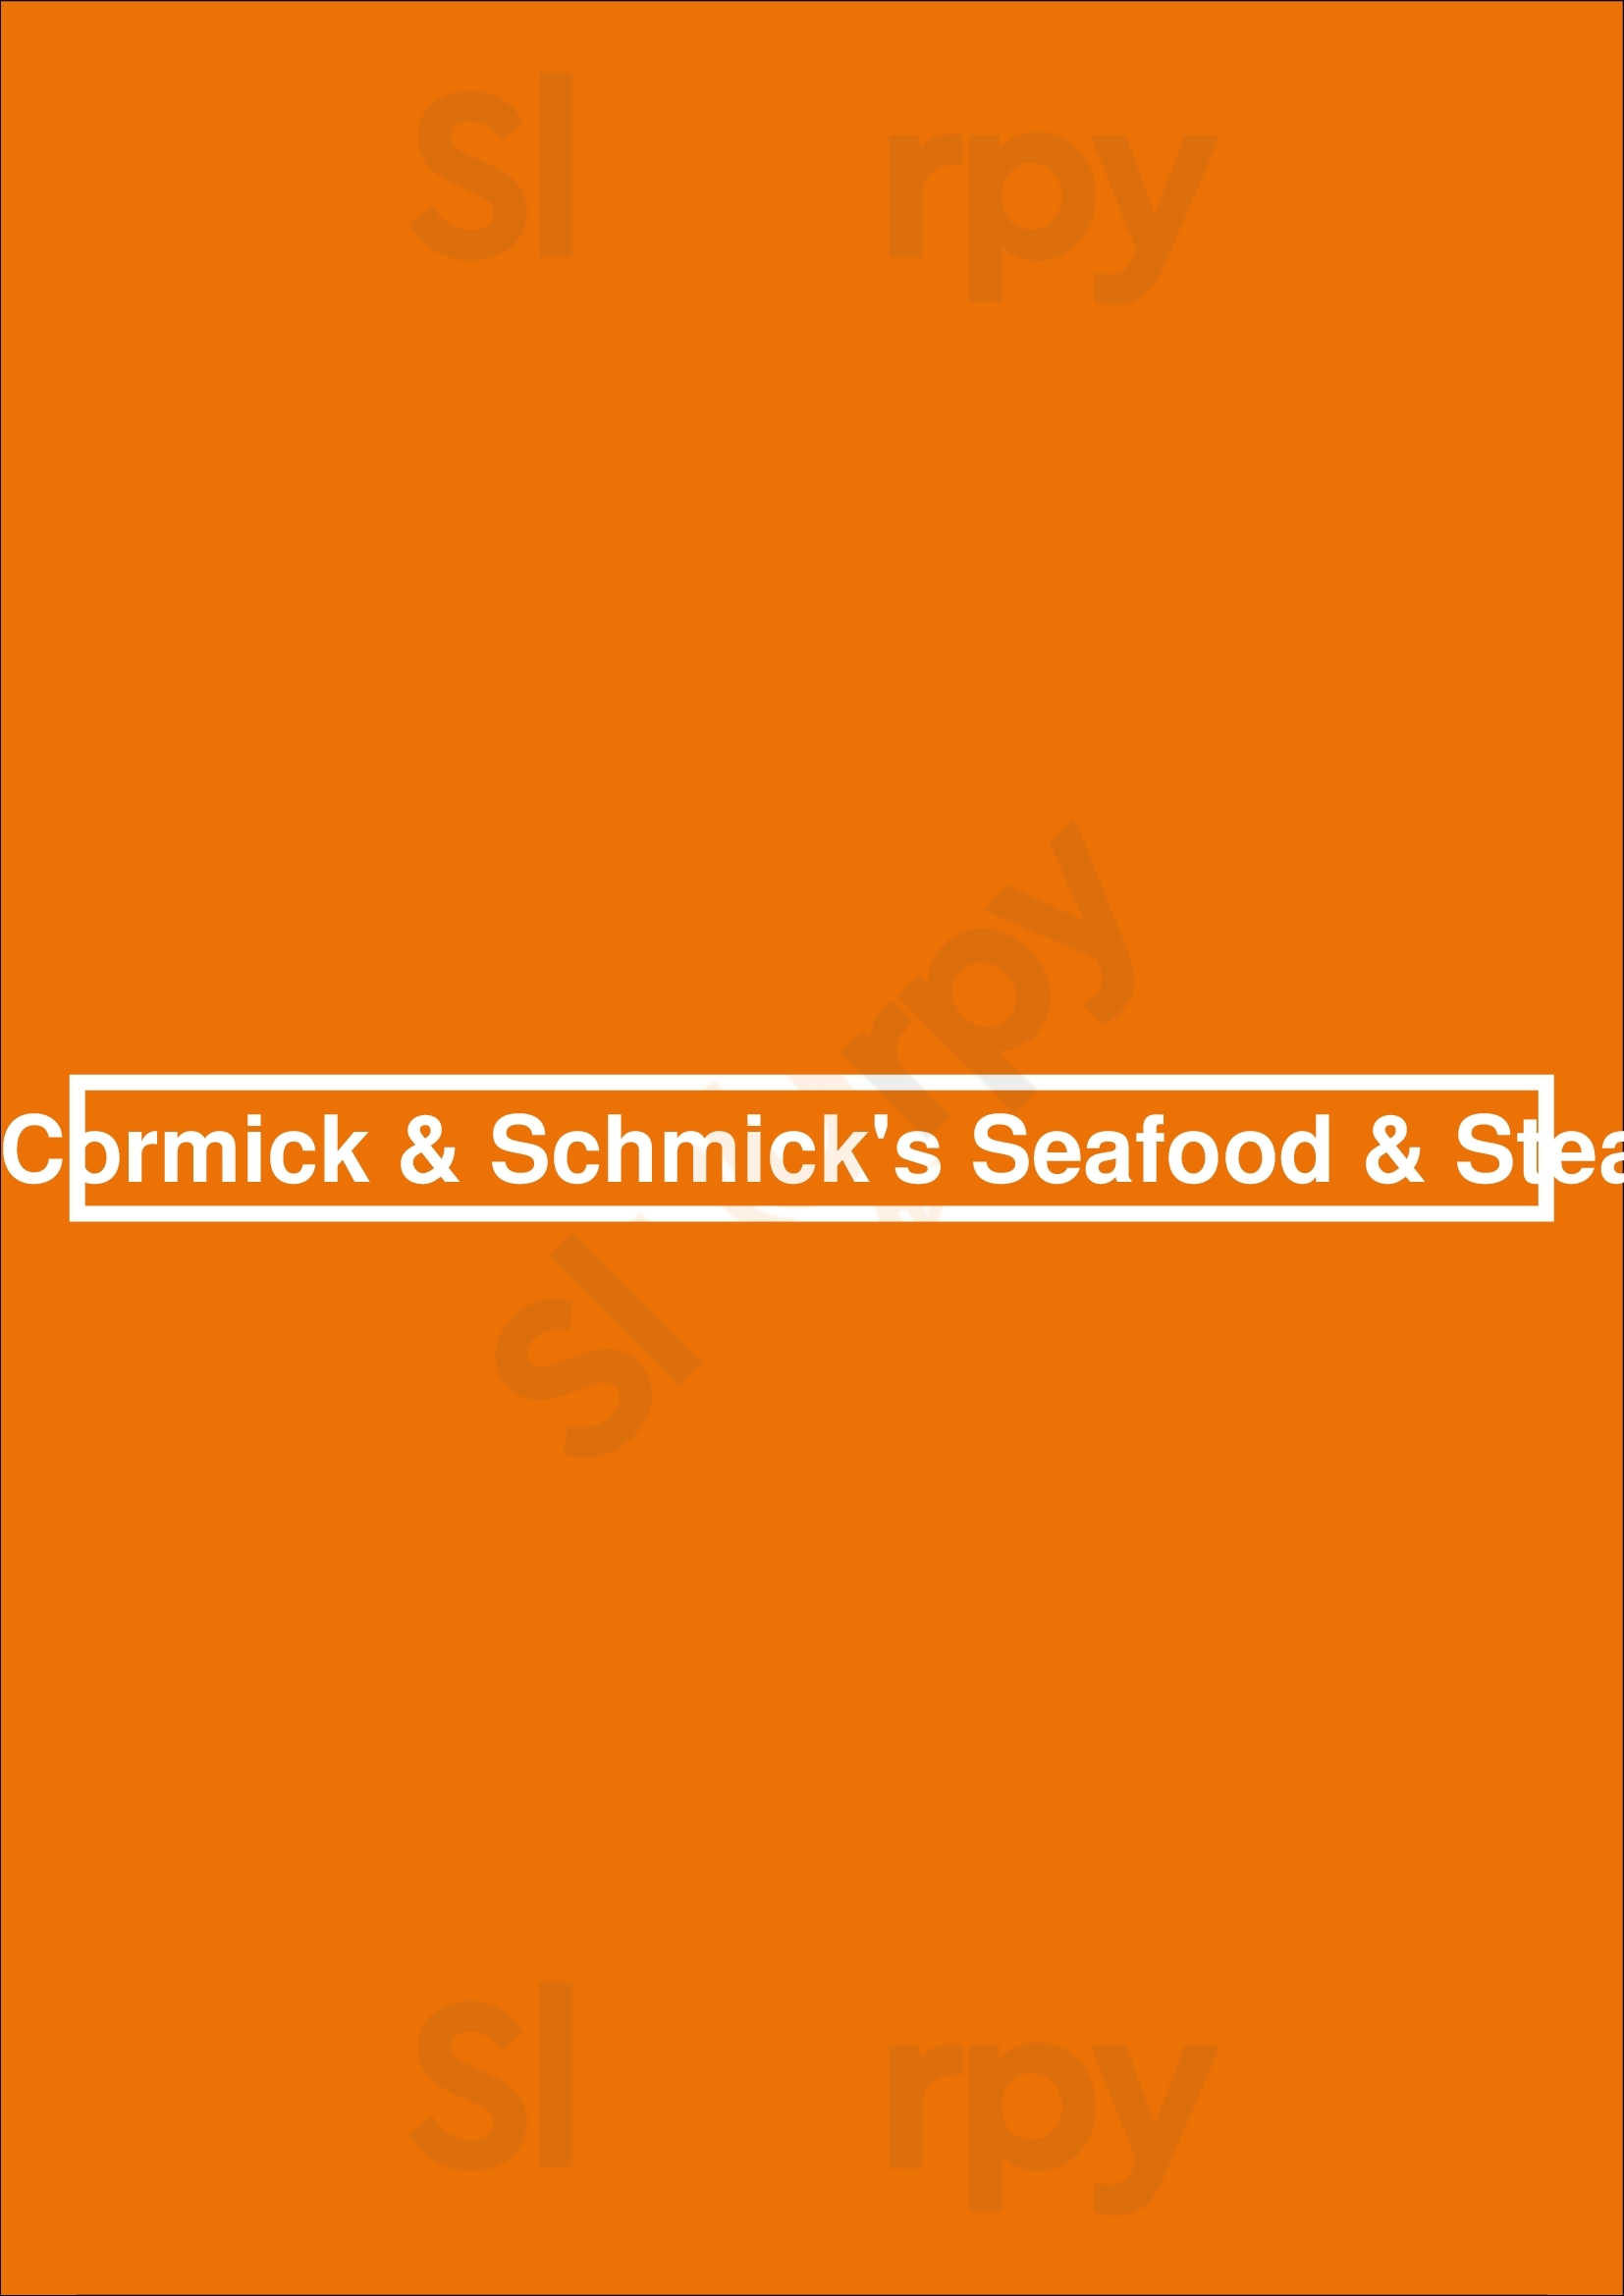 Mccormick & Schmick's Seafood & Steaks Philadelphia Menu - 1